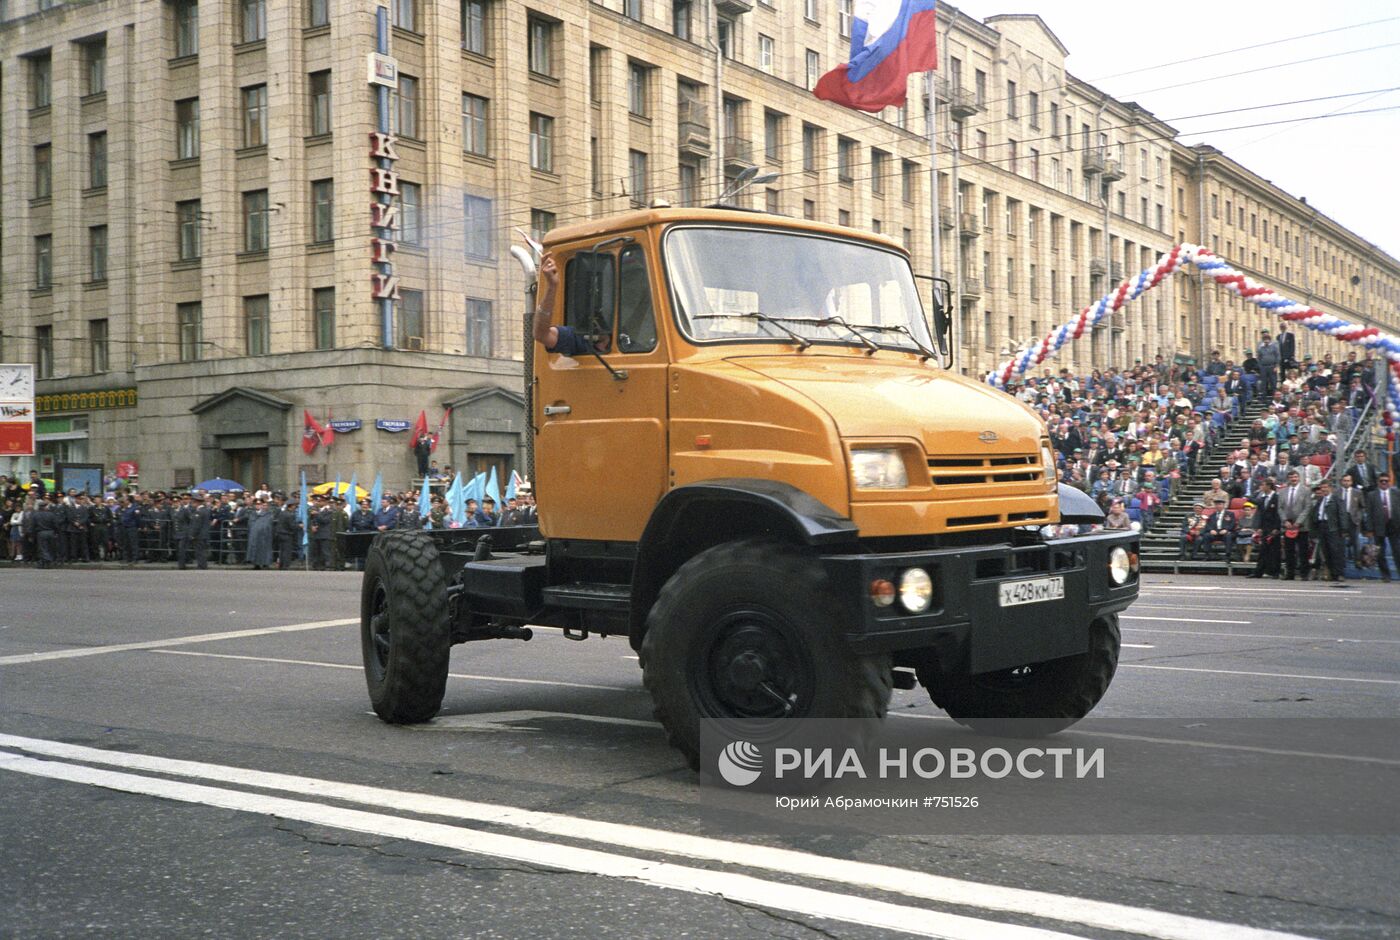 Парад автомобилей на празднике Дня города Москвы